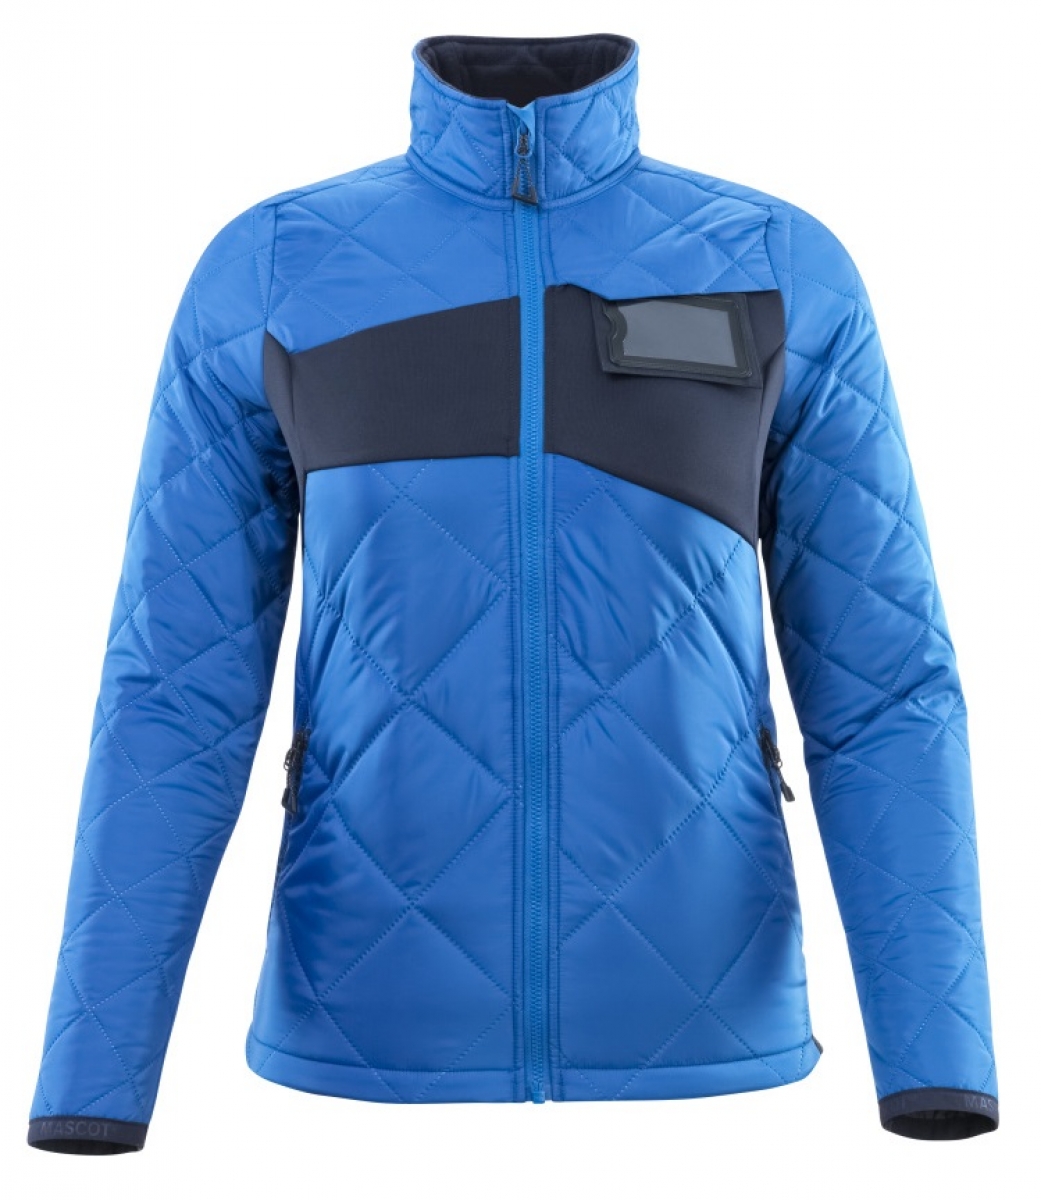 MASCOT-Workwear, Klteschutz, Damen Winterjacke, 260 g/m, azurblau/schwarzblau